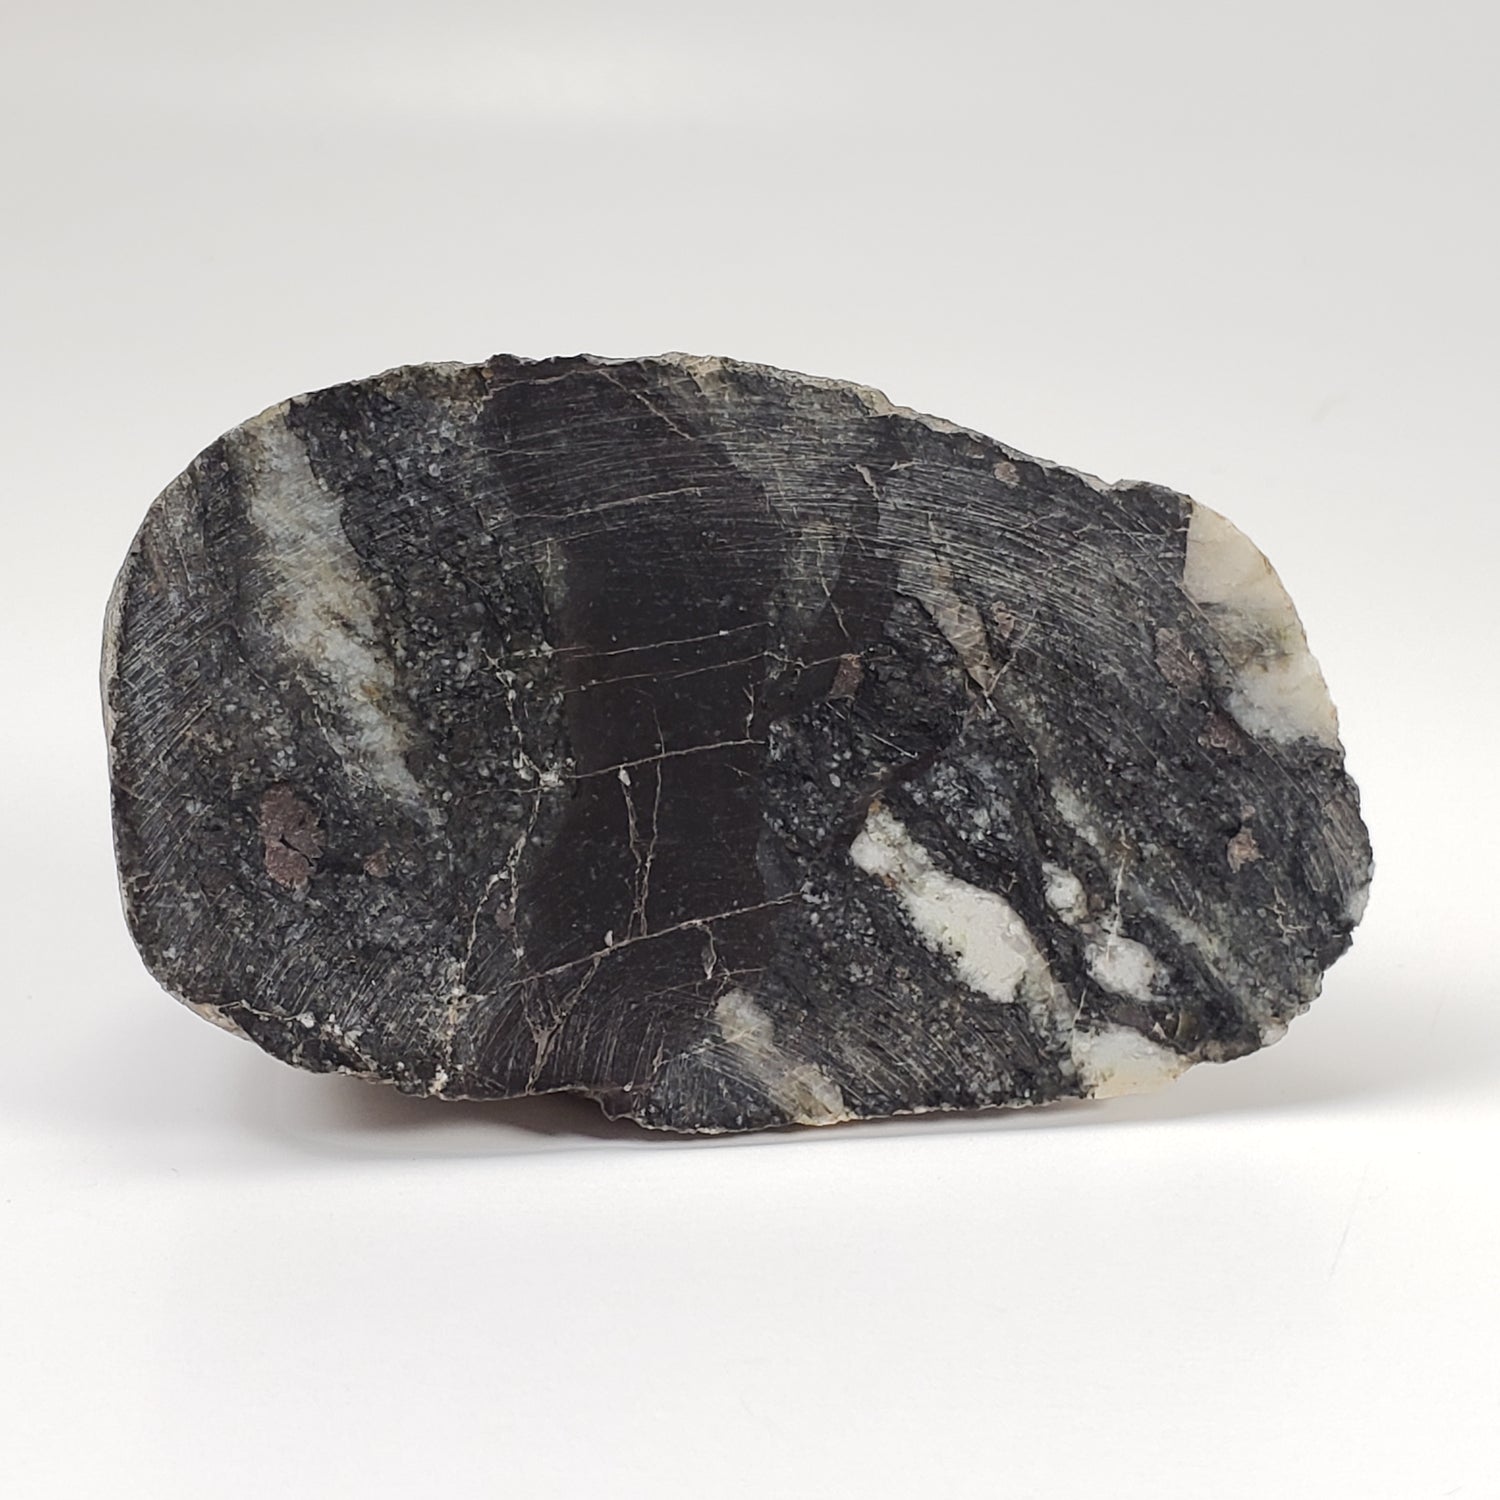 Dellenites Impact Melt Rock | 207.4 grams | HT Tagamite | Dellen Crater, Sweden | Canagem.com